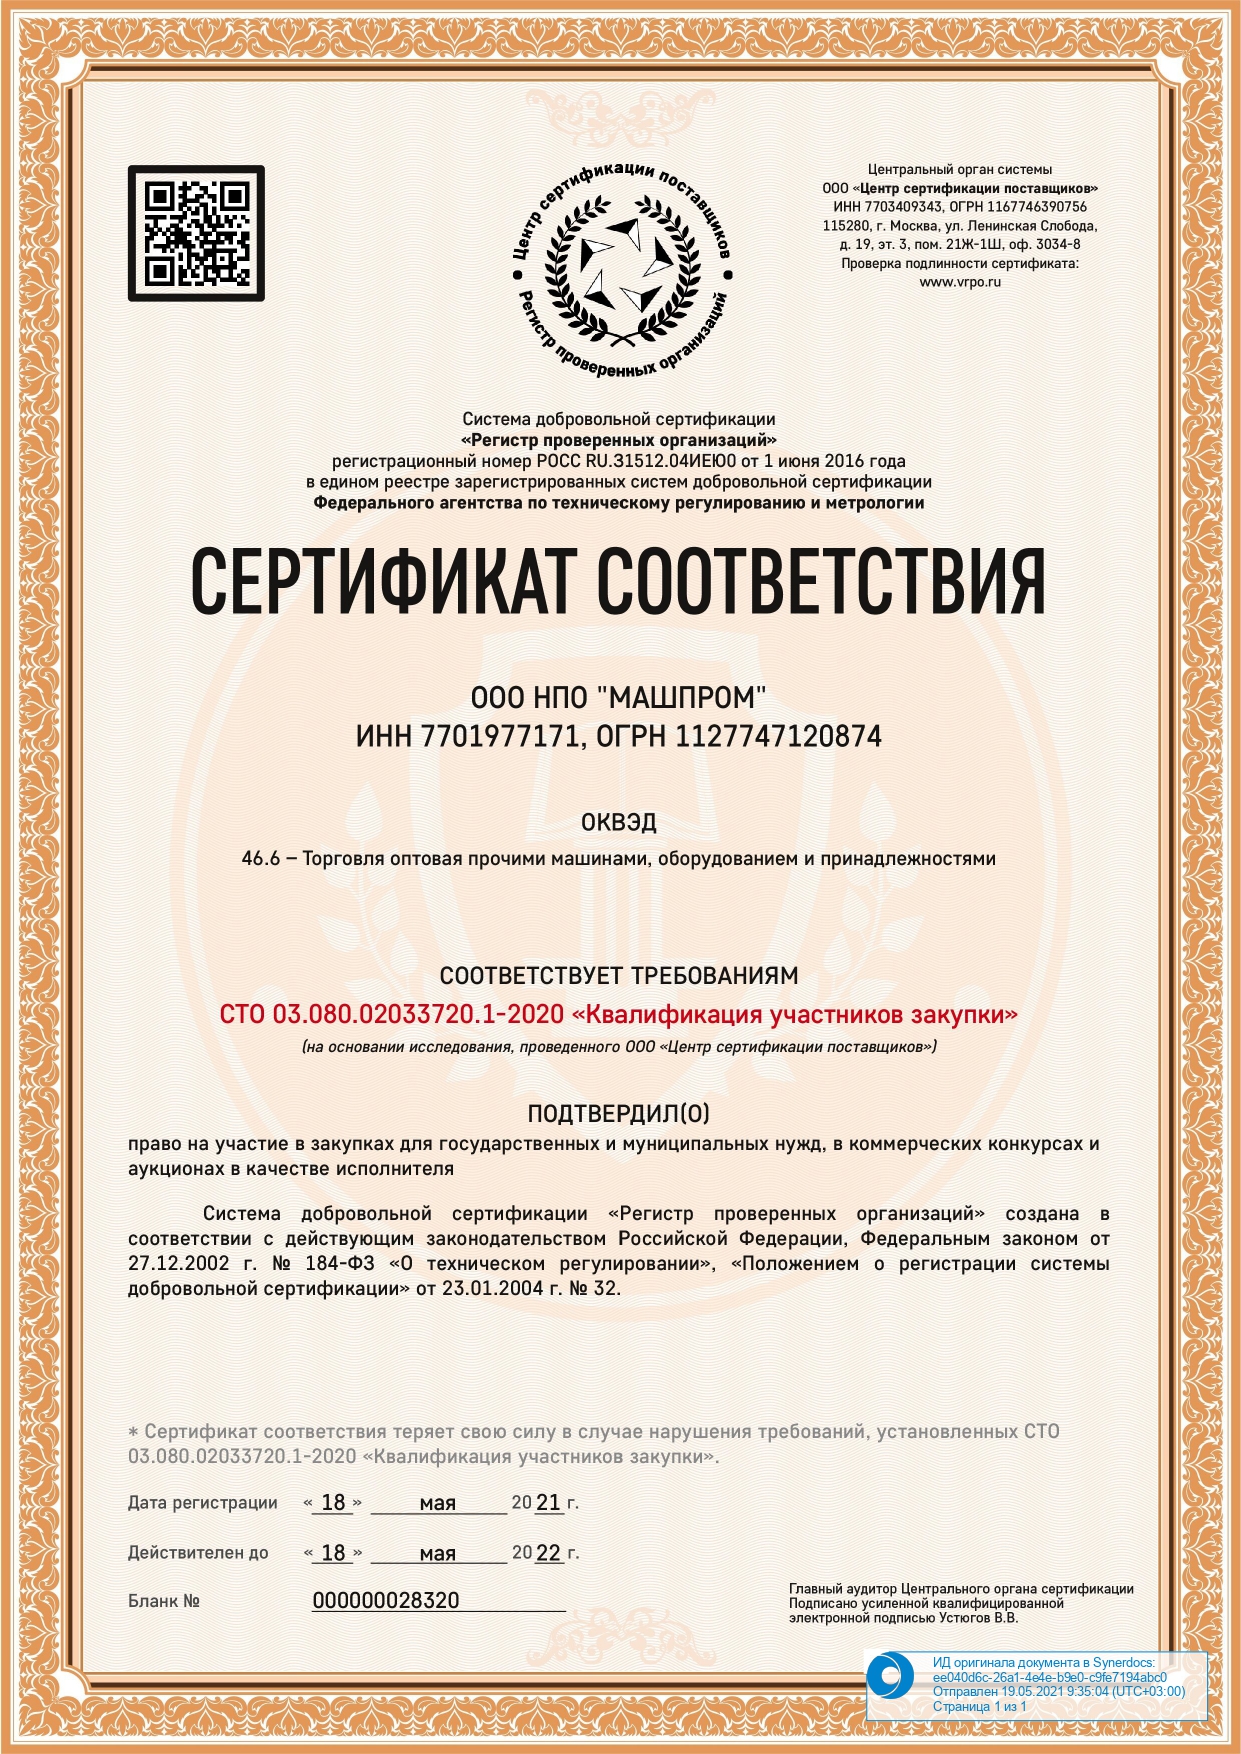 Сертификат соответствия СТО 03.080.02033720.1-2020